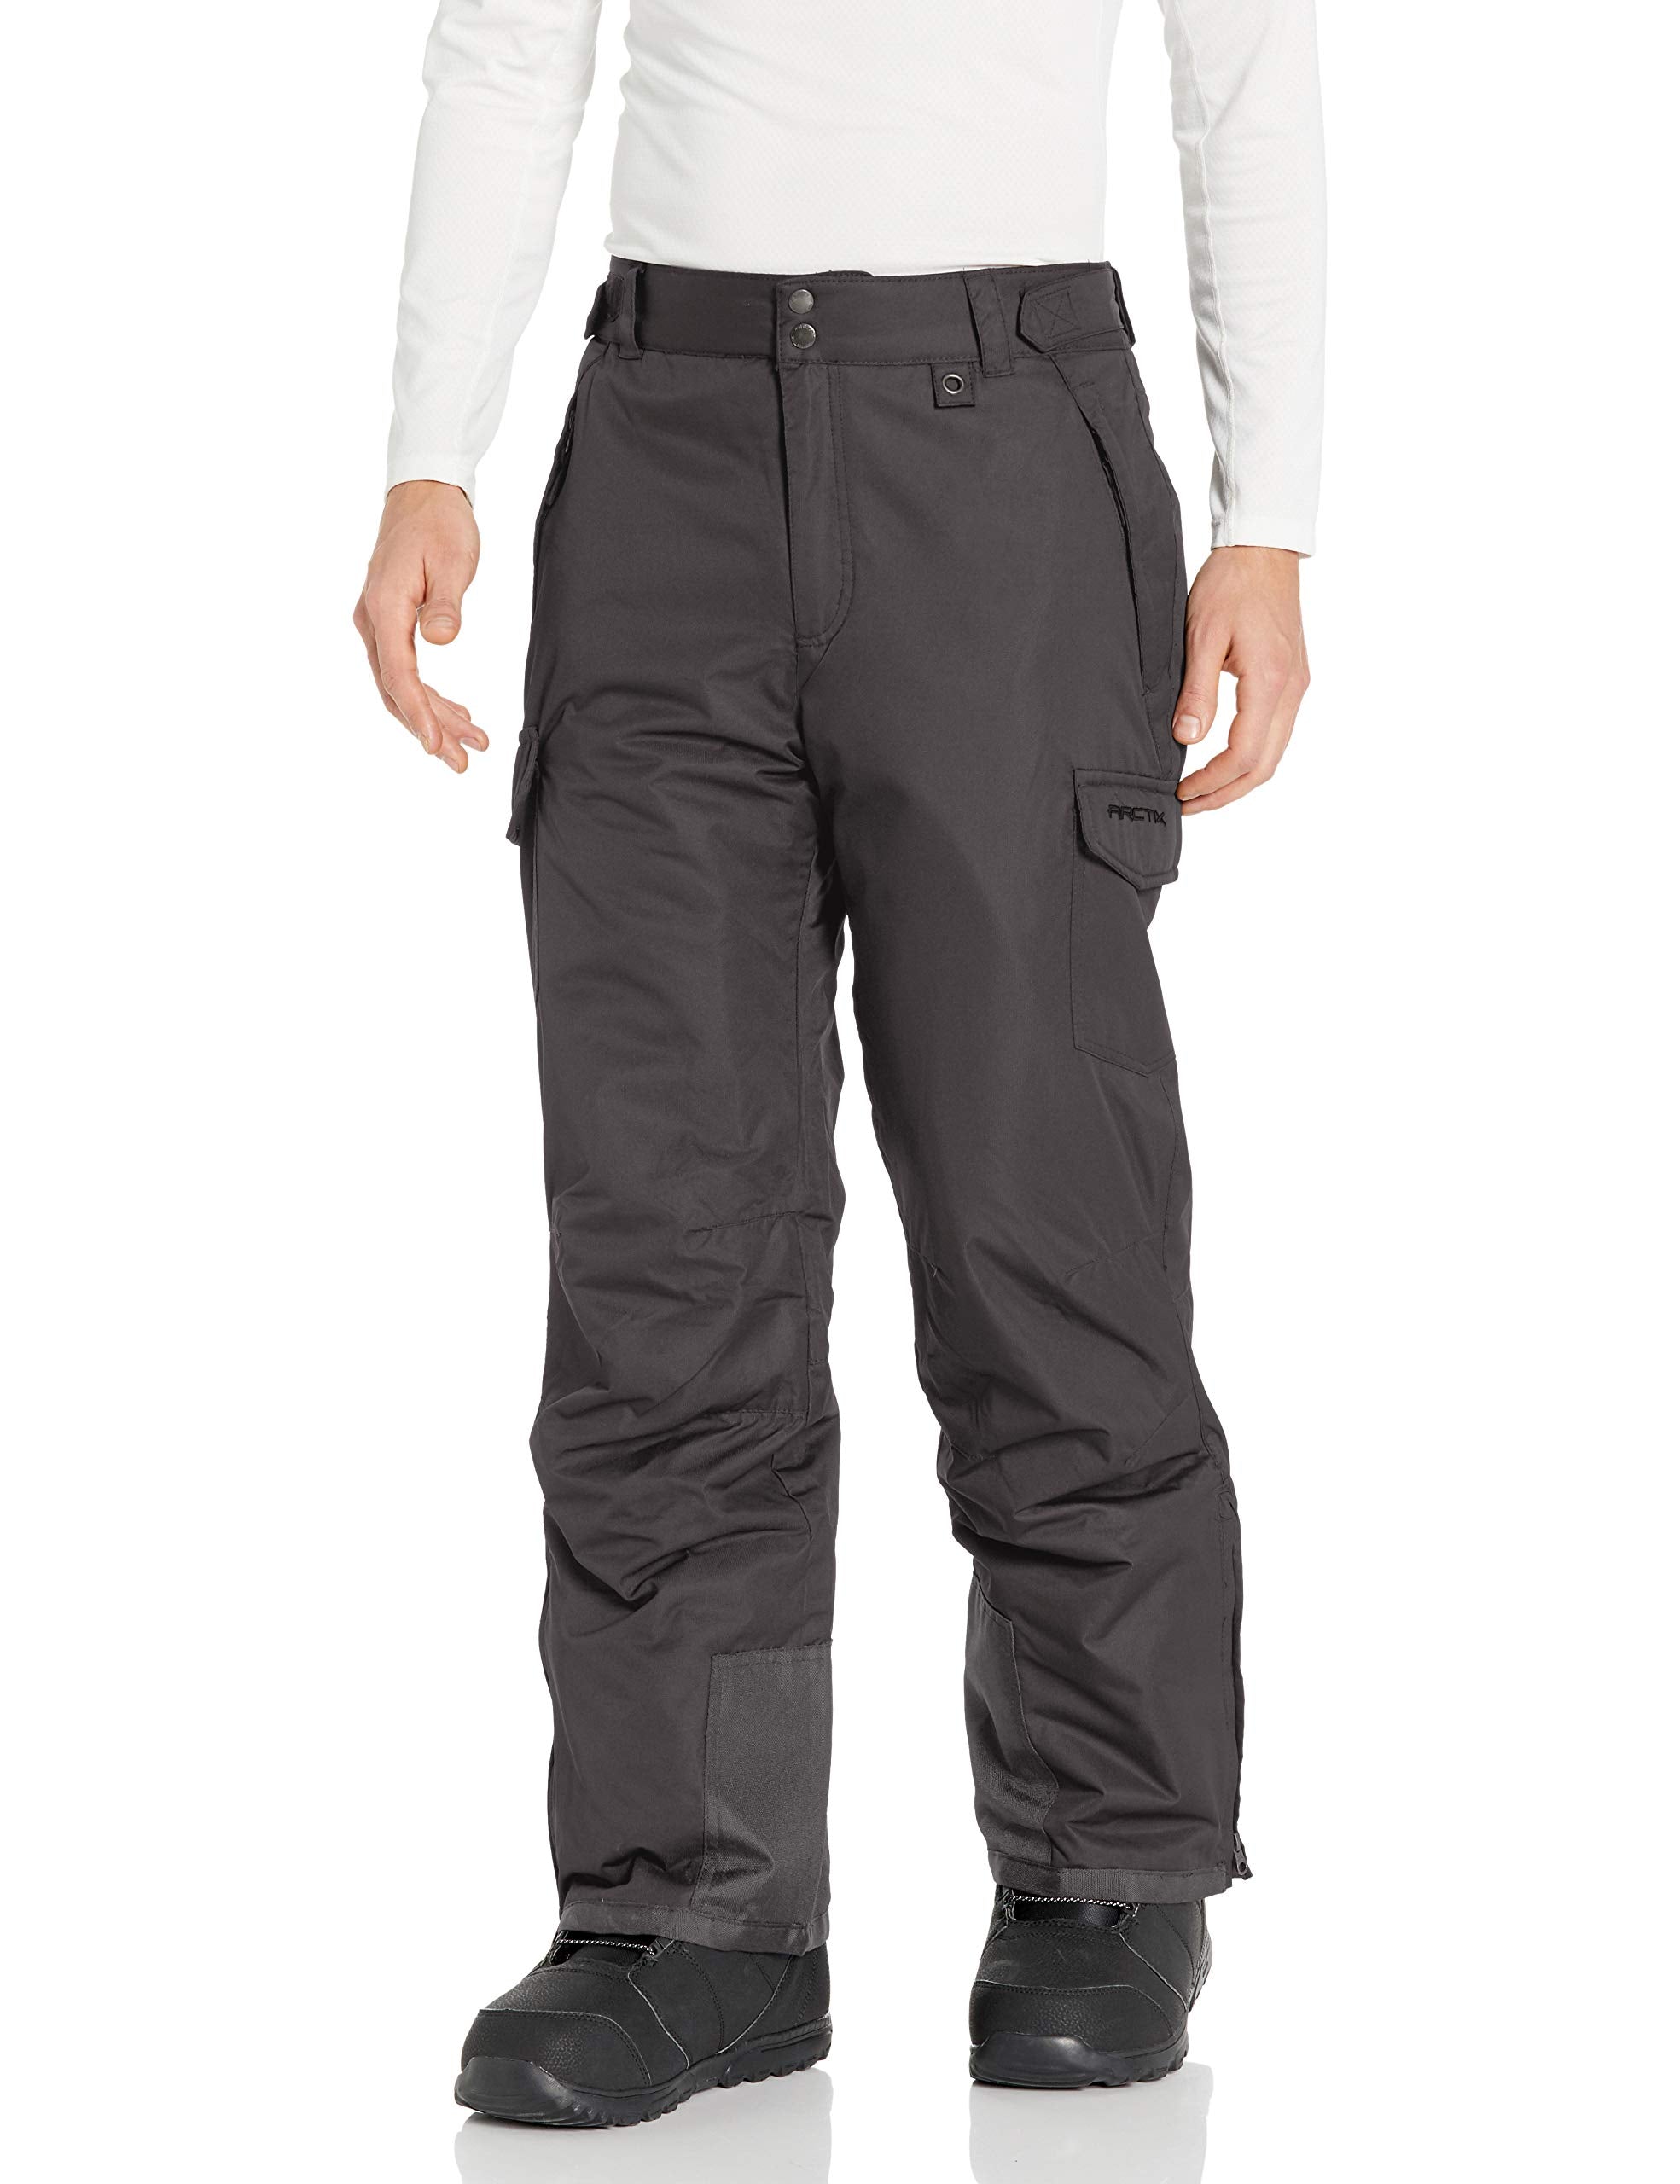 Arctix Full side zip winter pants.